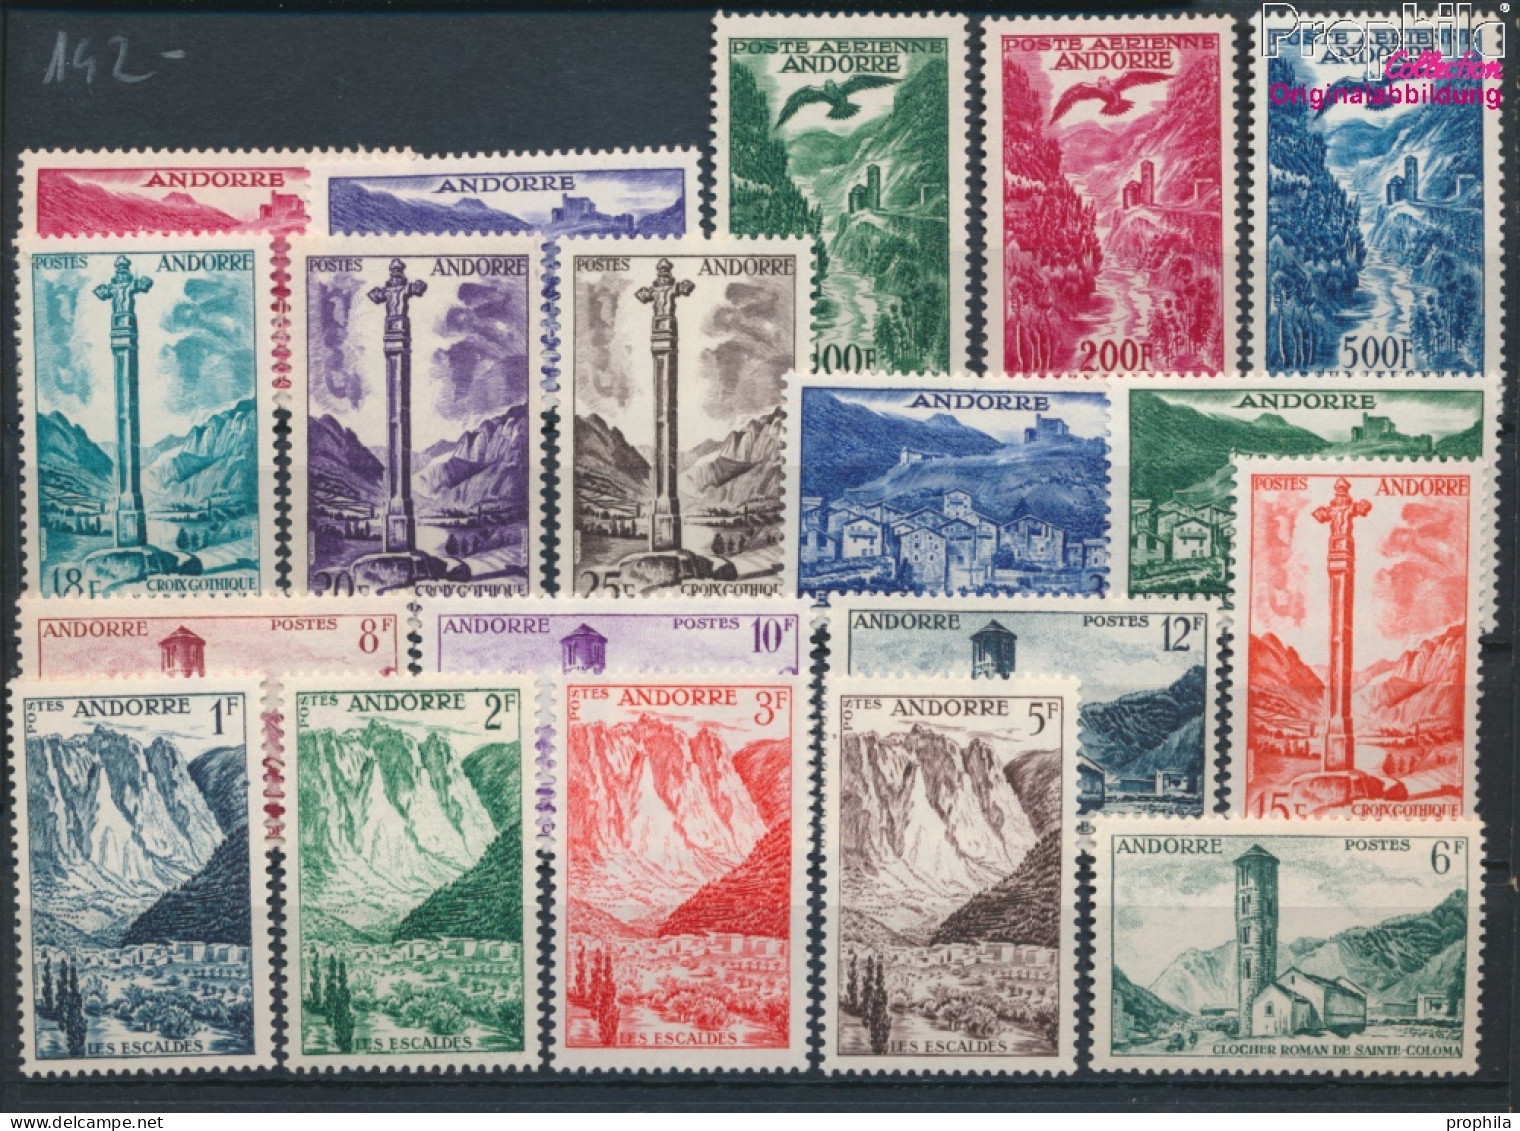 Andorra - Französische Post Postfrisch Landschaften 1955 Landschaften  (10368759 - Ongebruikt